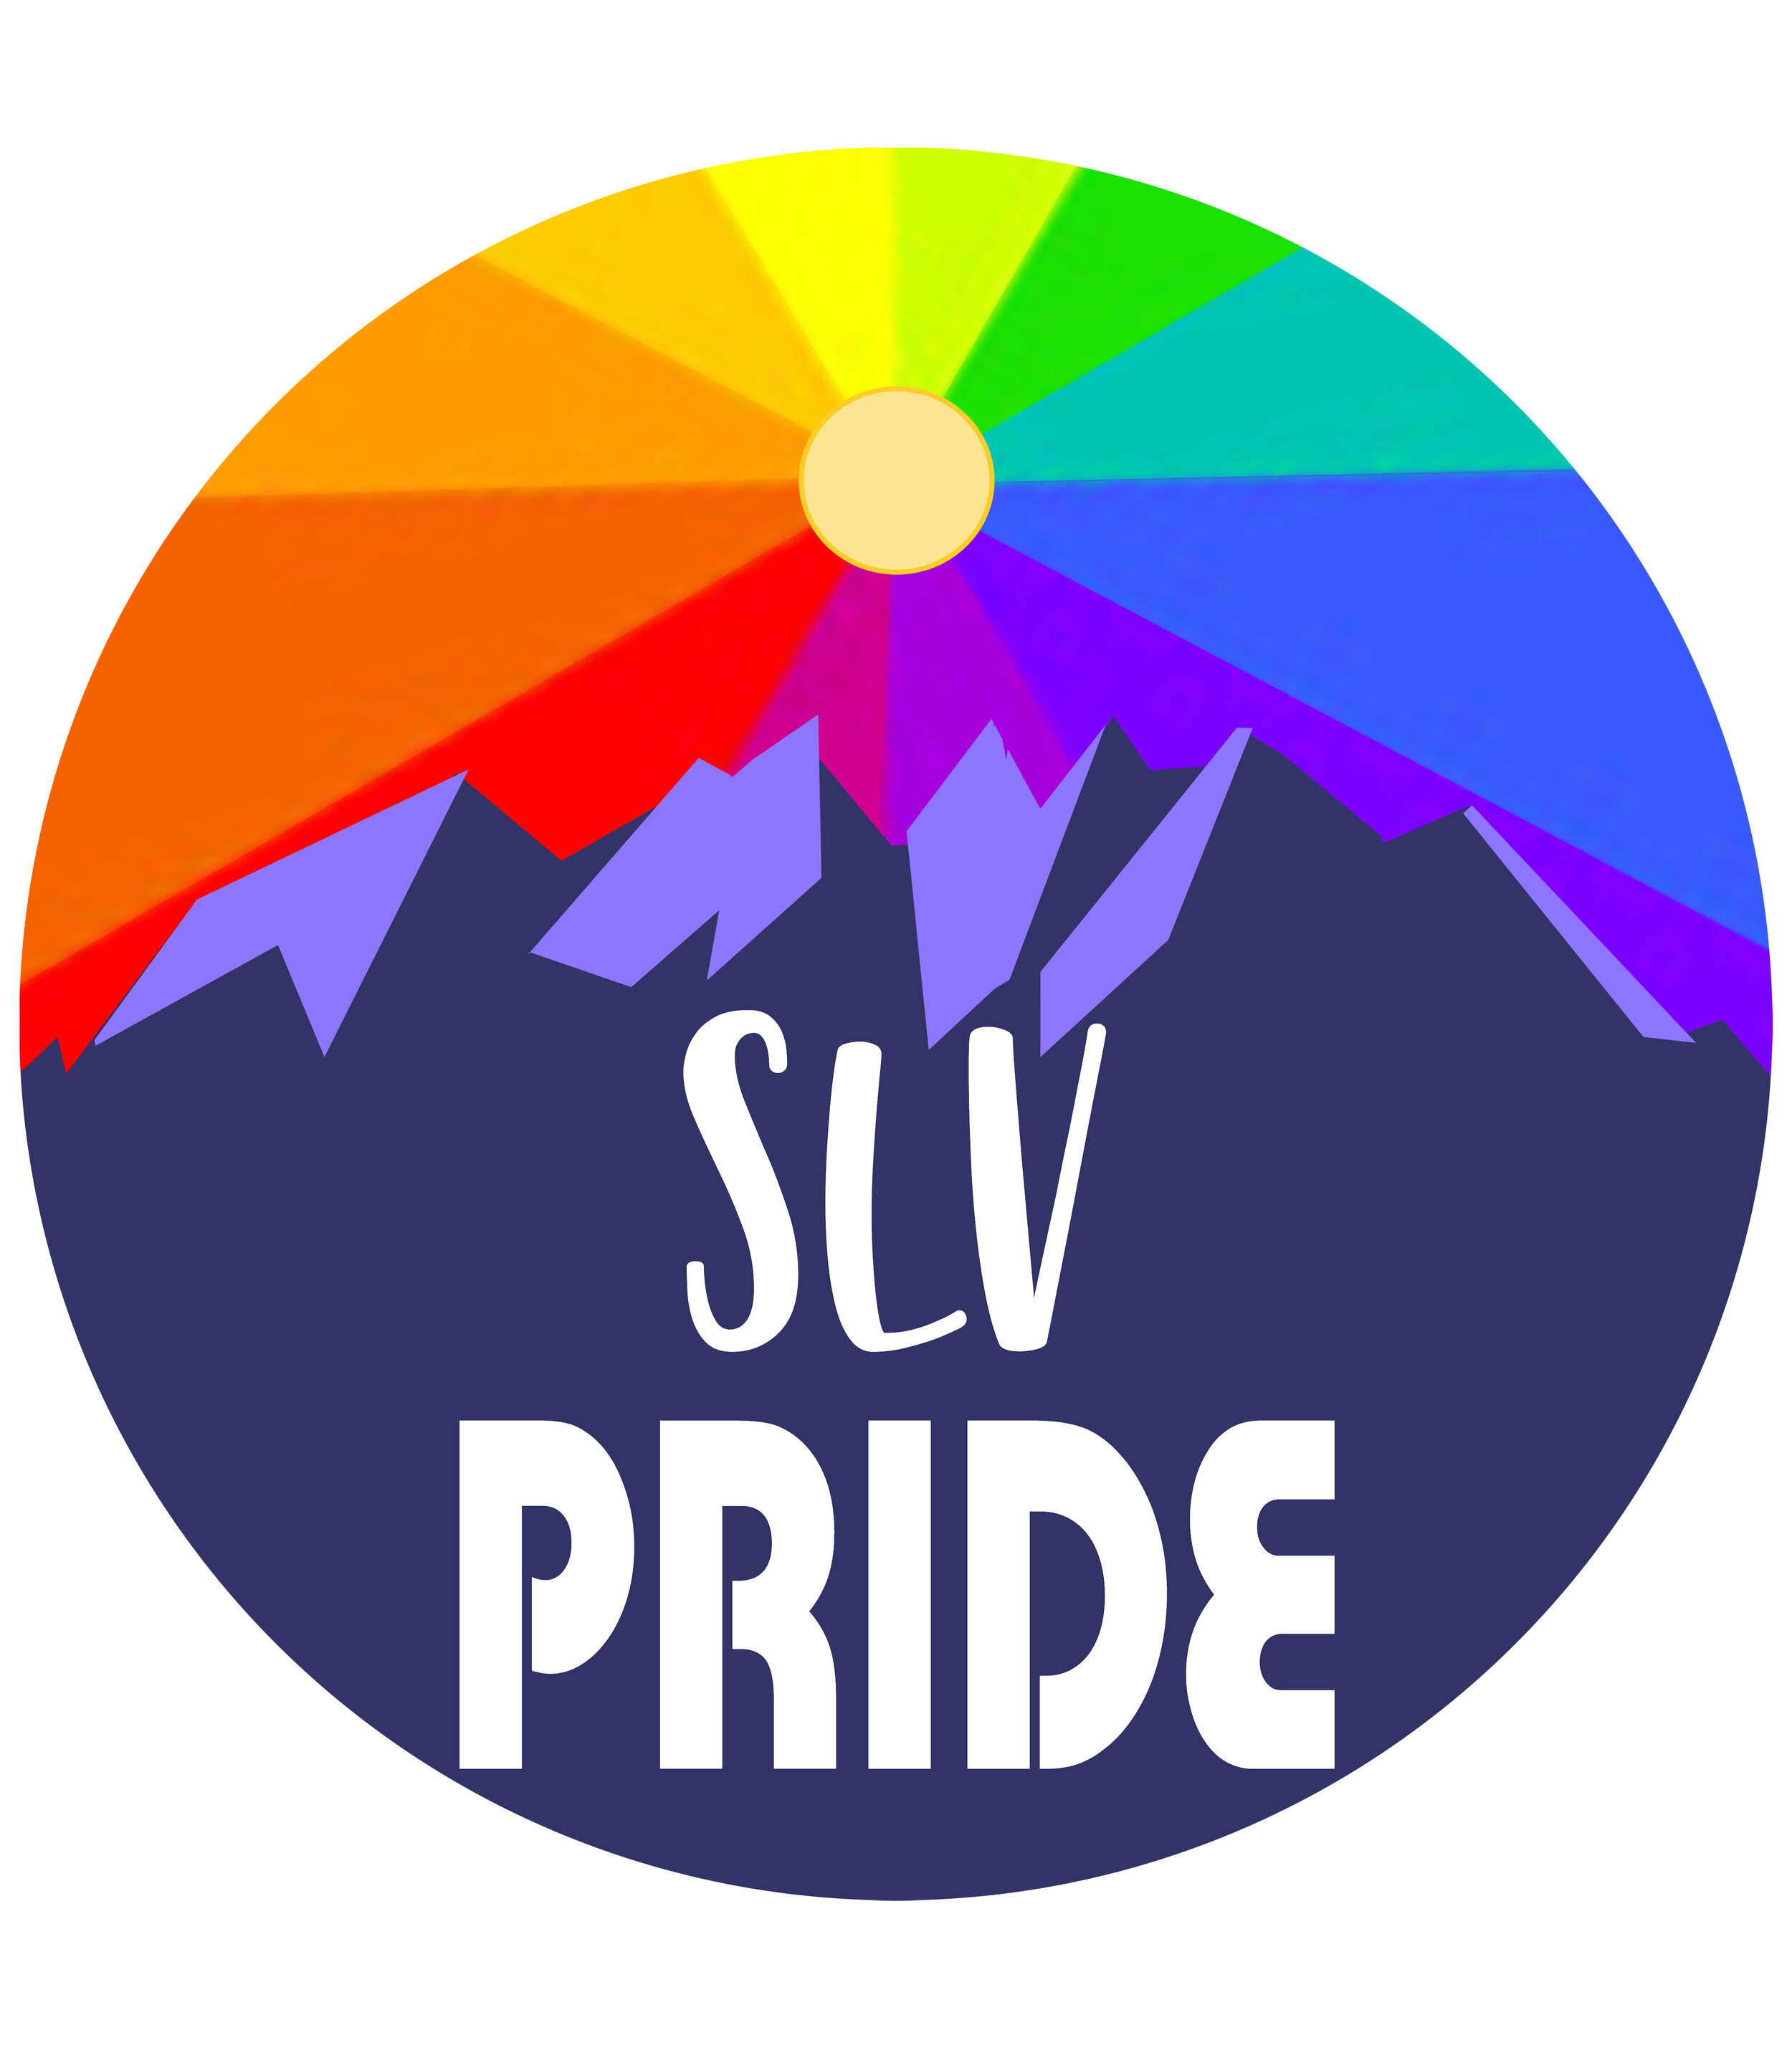 SLV Pride